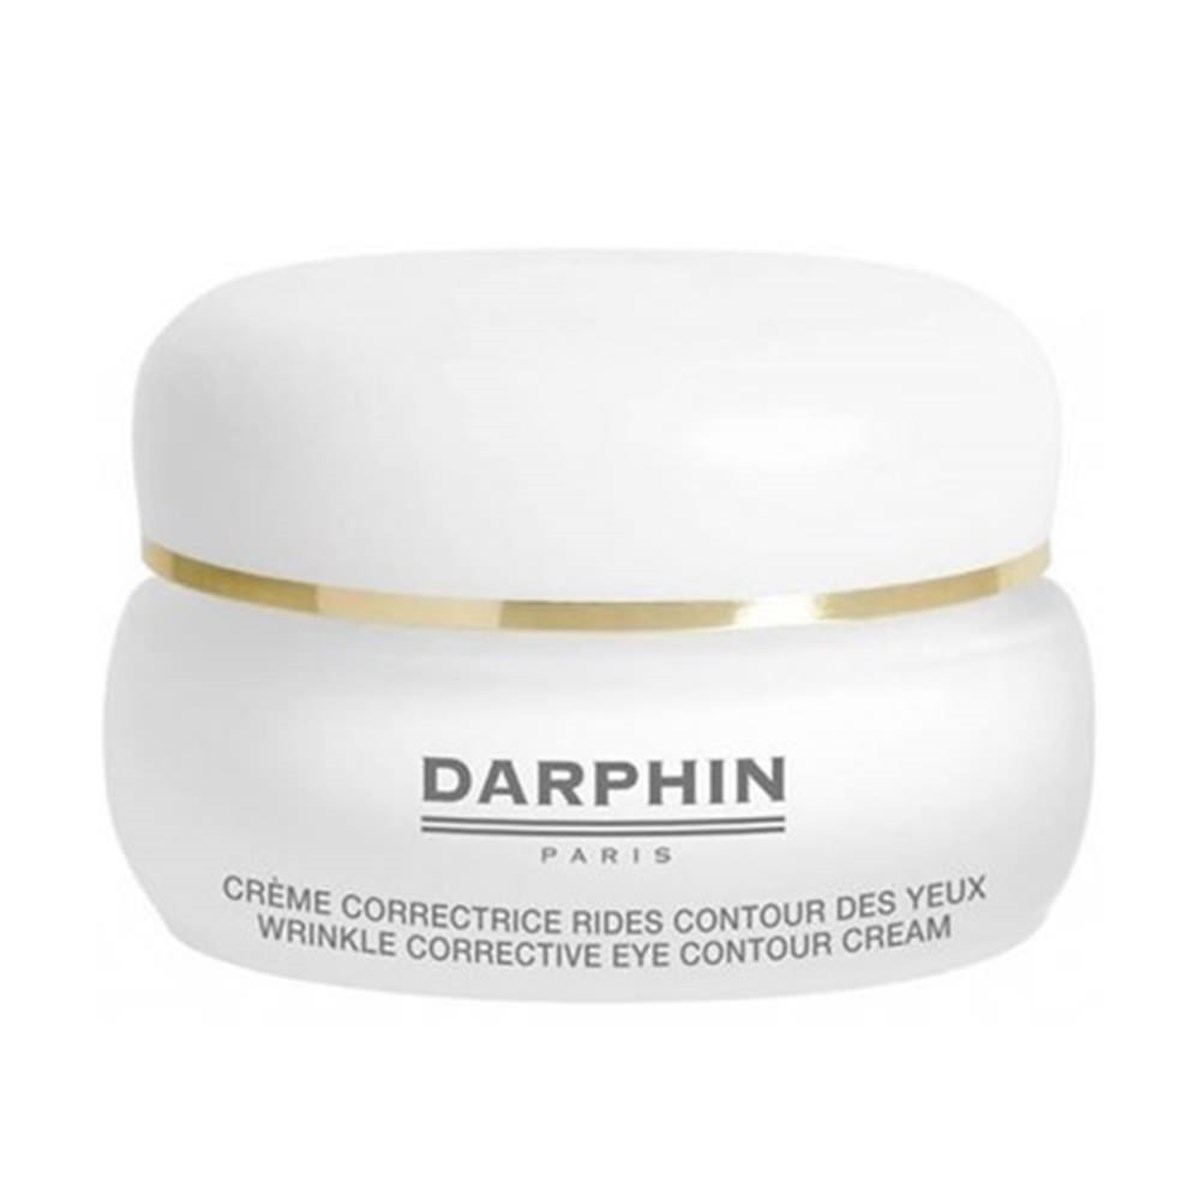 Darphin Wrinkle Corrective Eye Contour Cream 15 ml Göz Çevresi Kırışıklık  Kremi